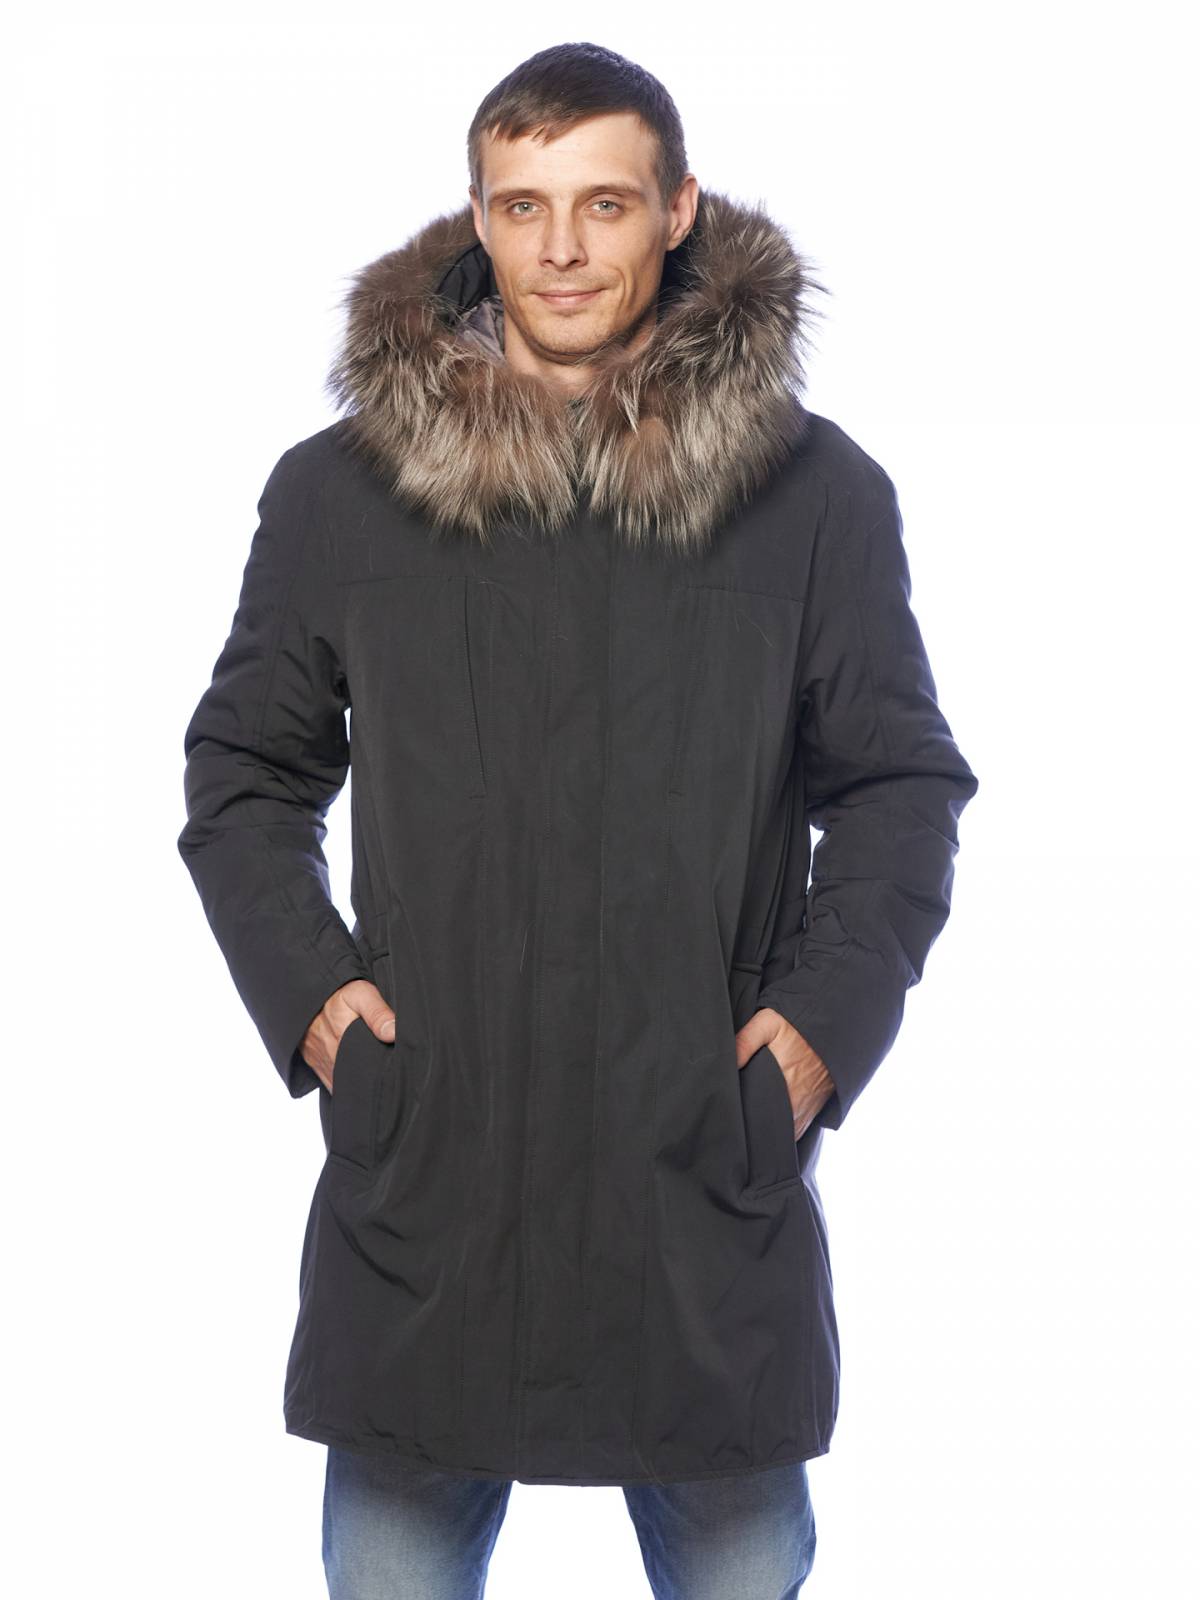 Зимняя куртка мужская Clasna 3580 серая 56 RU